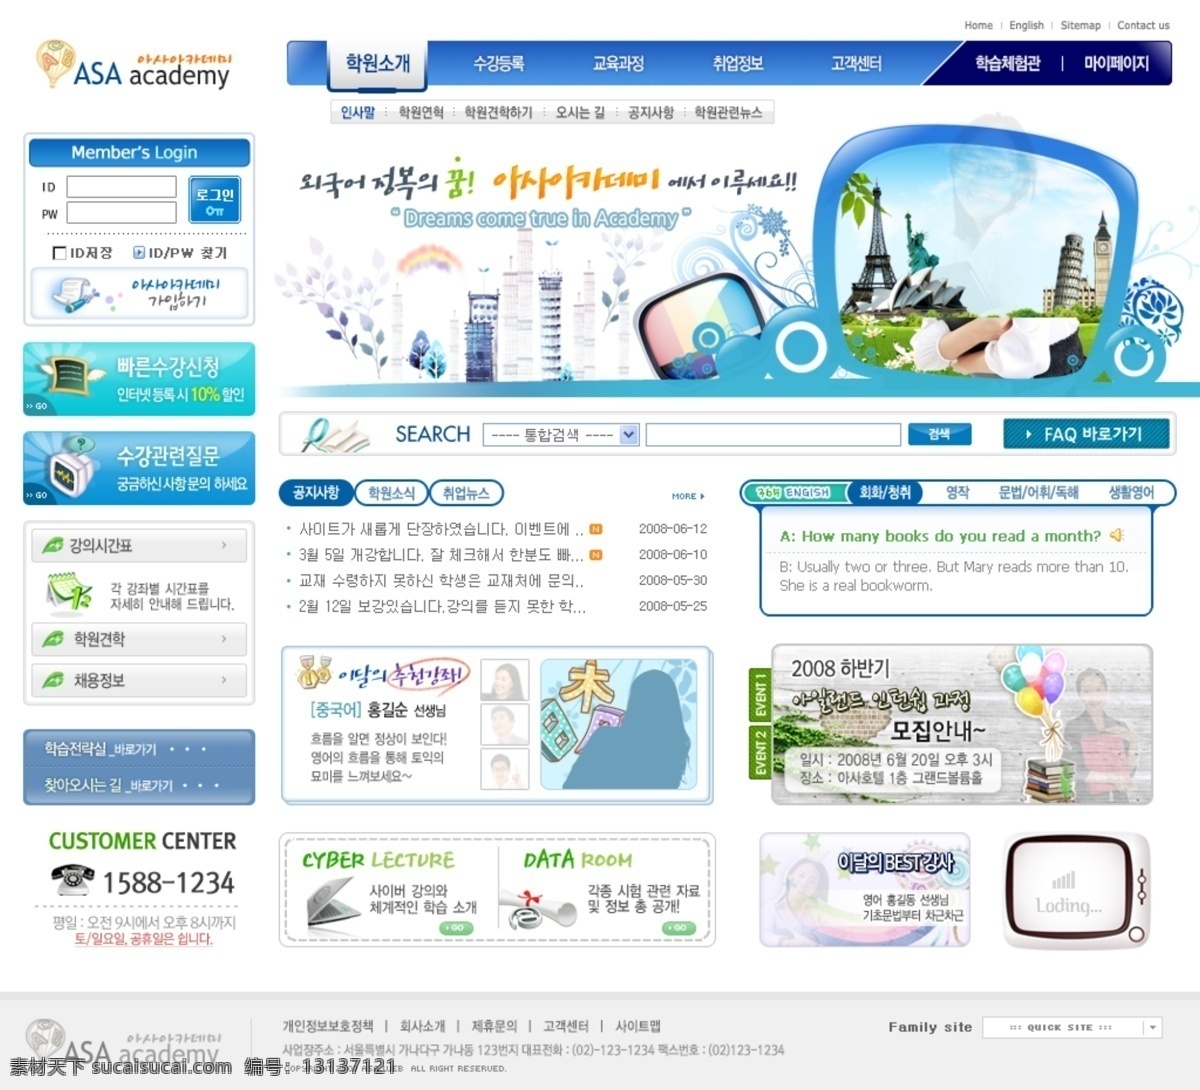 学校教育 网站 模板 培训 宣传网站 教育网站 企业网站 学校网站 学生 韩文模板 网页模板 源文件